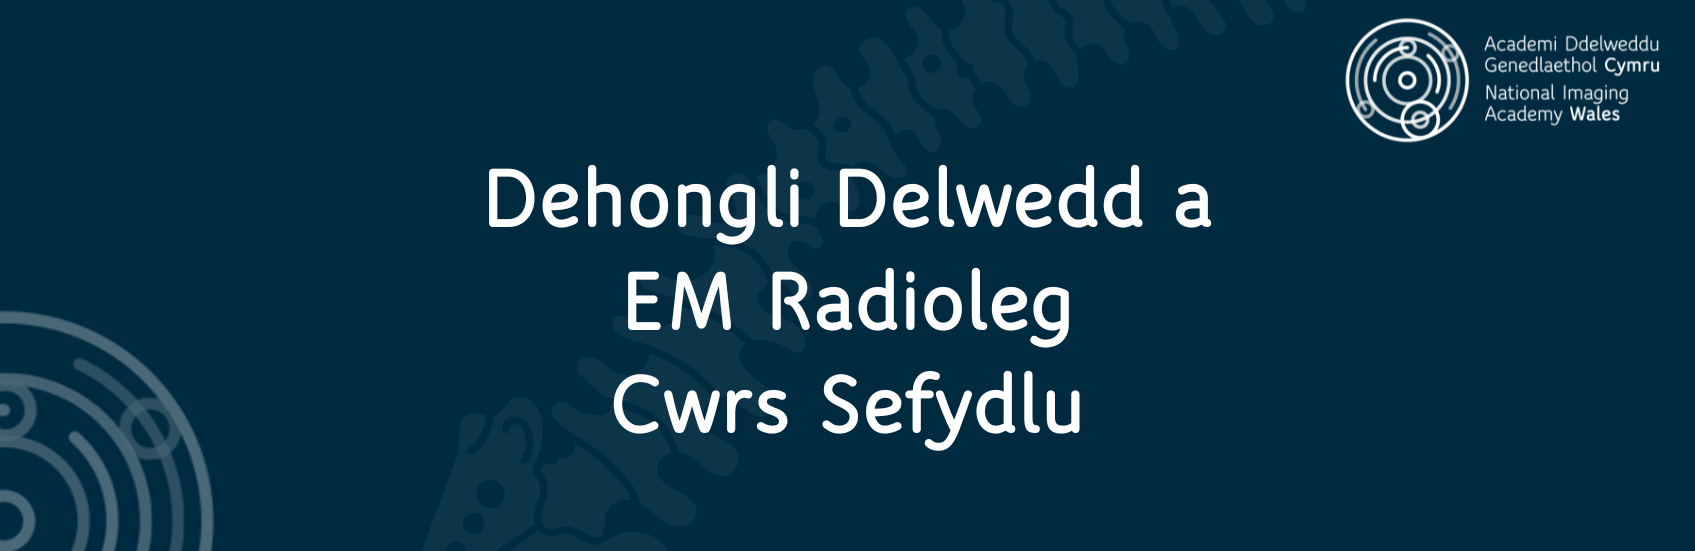 Dehongli Delwedd a EM Radioleg Cwrs Sefydlu